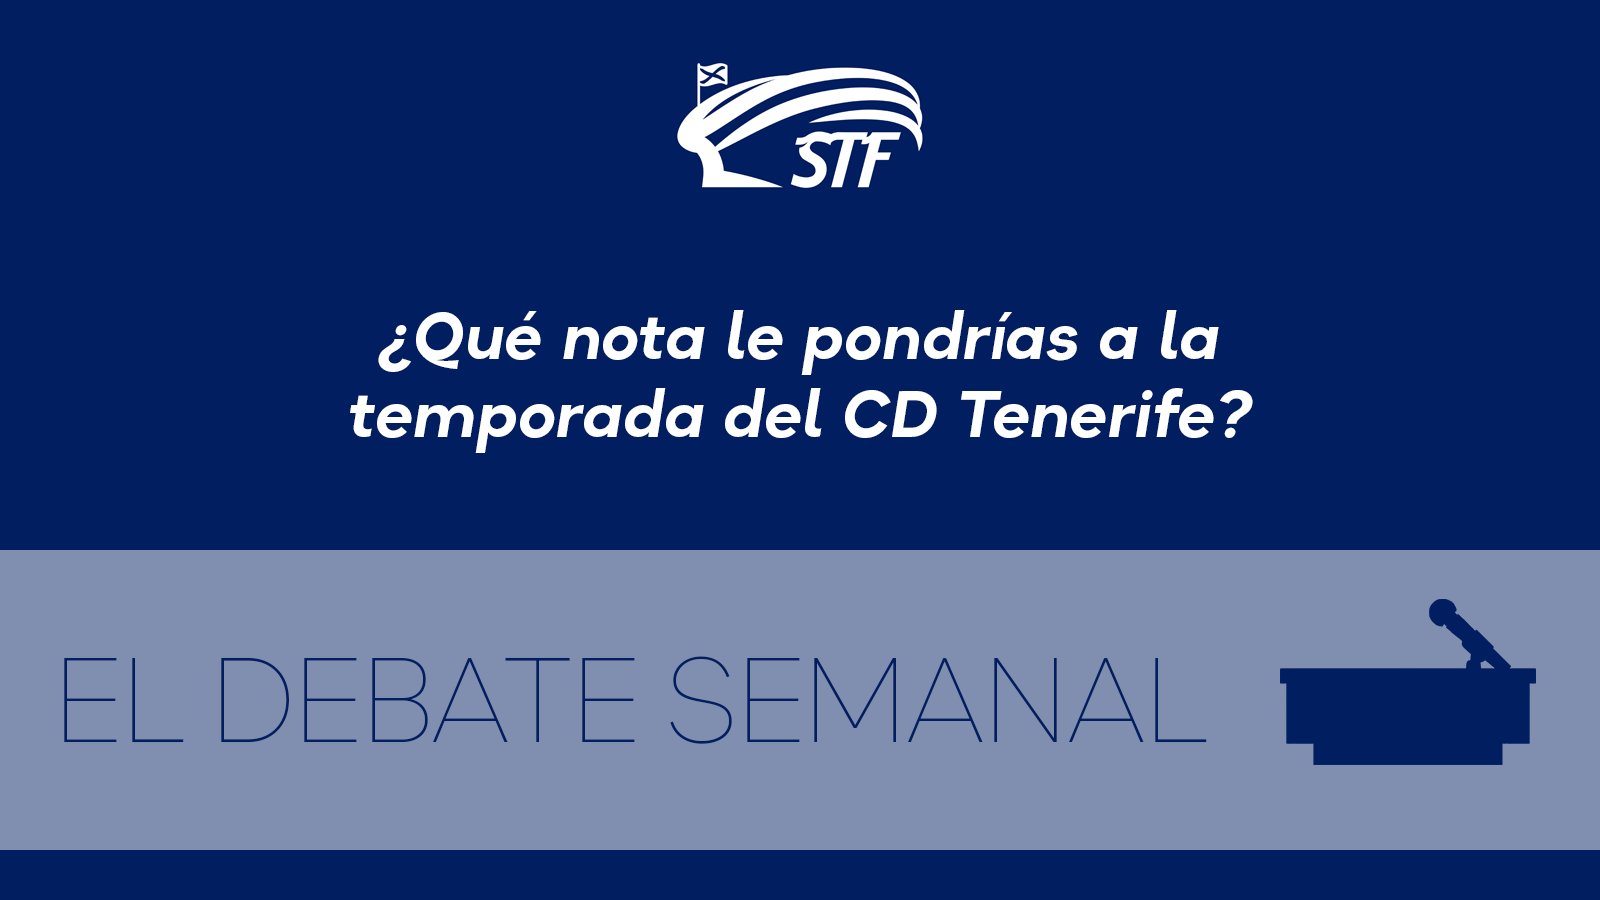 El Debate Semanal: ¿Qué nota le pondrías a la temporada del CD Tenerife? El 59% le pone un suficiente